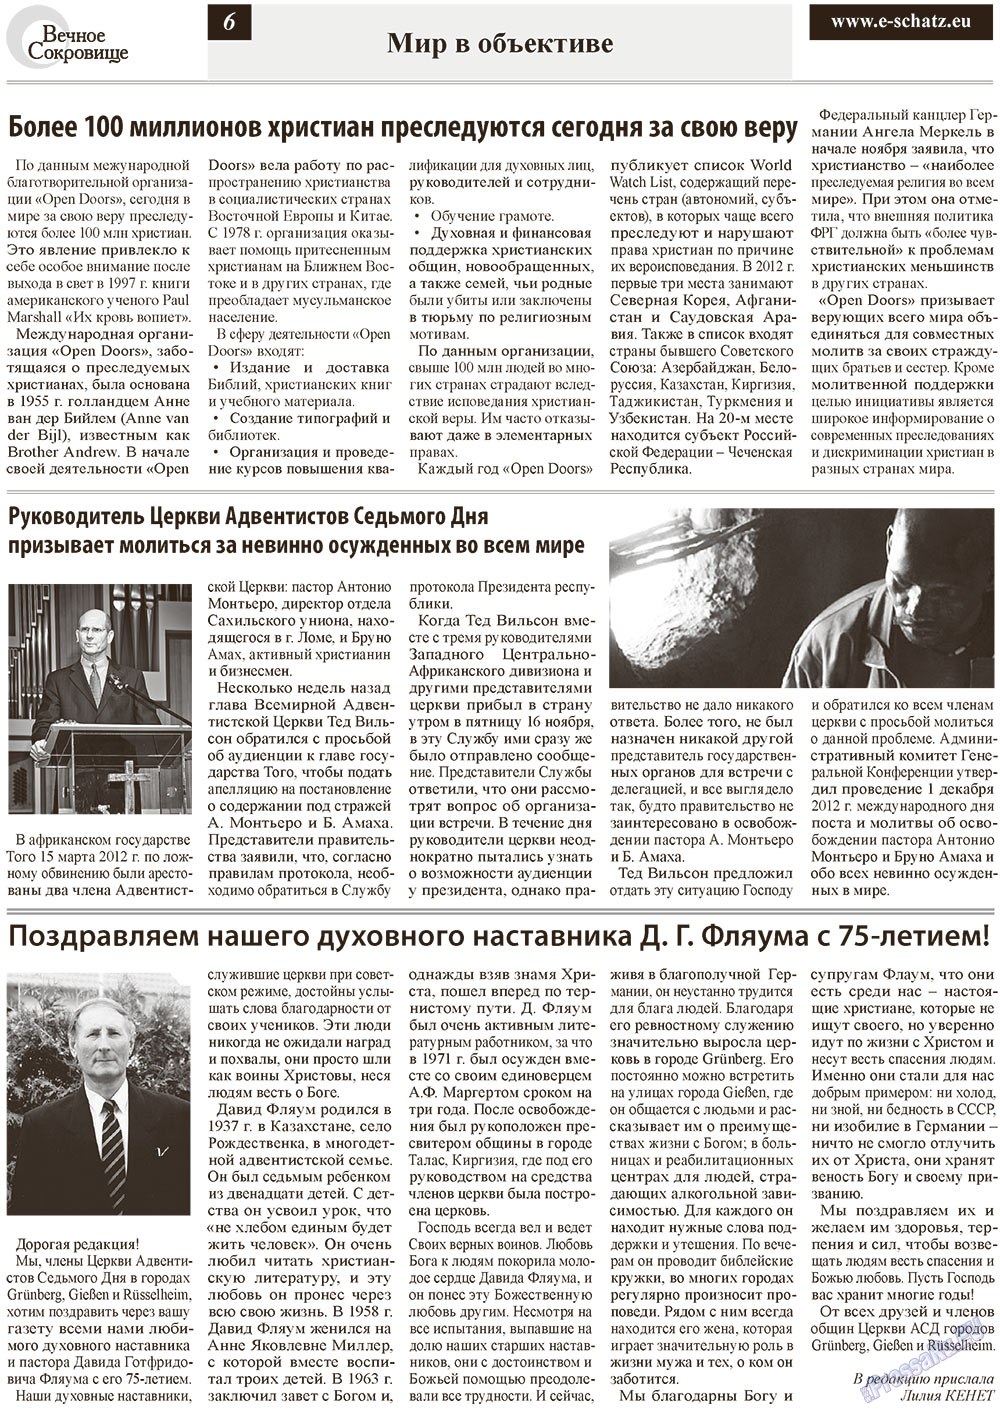 Вечное сокровище (газета). 2012 год, номер 6, стр. 6